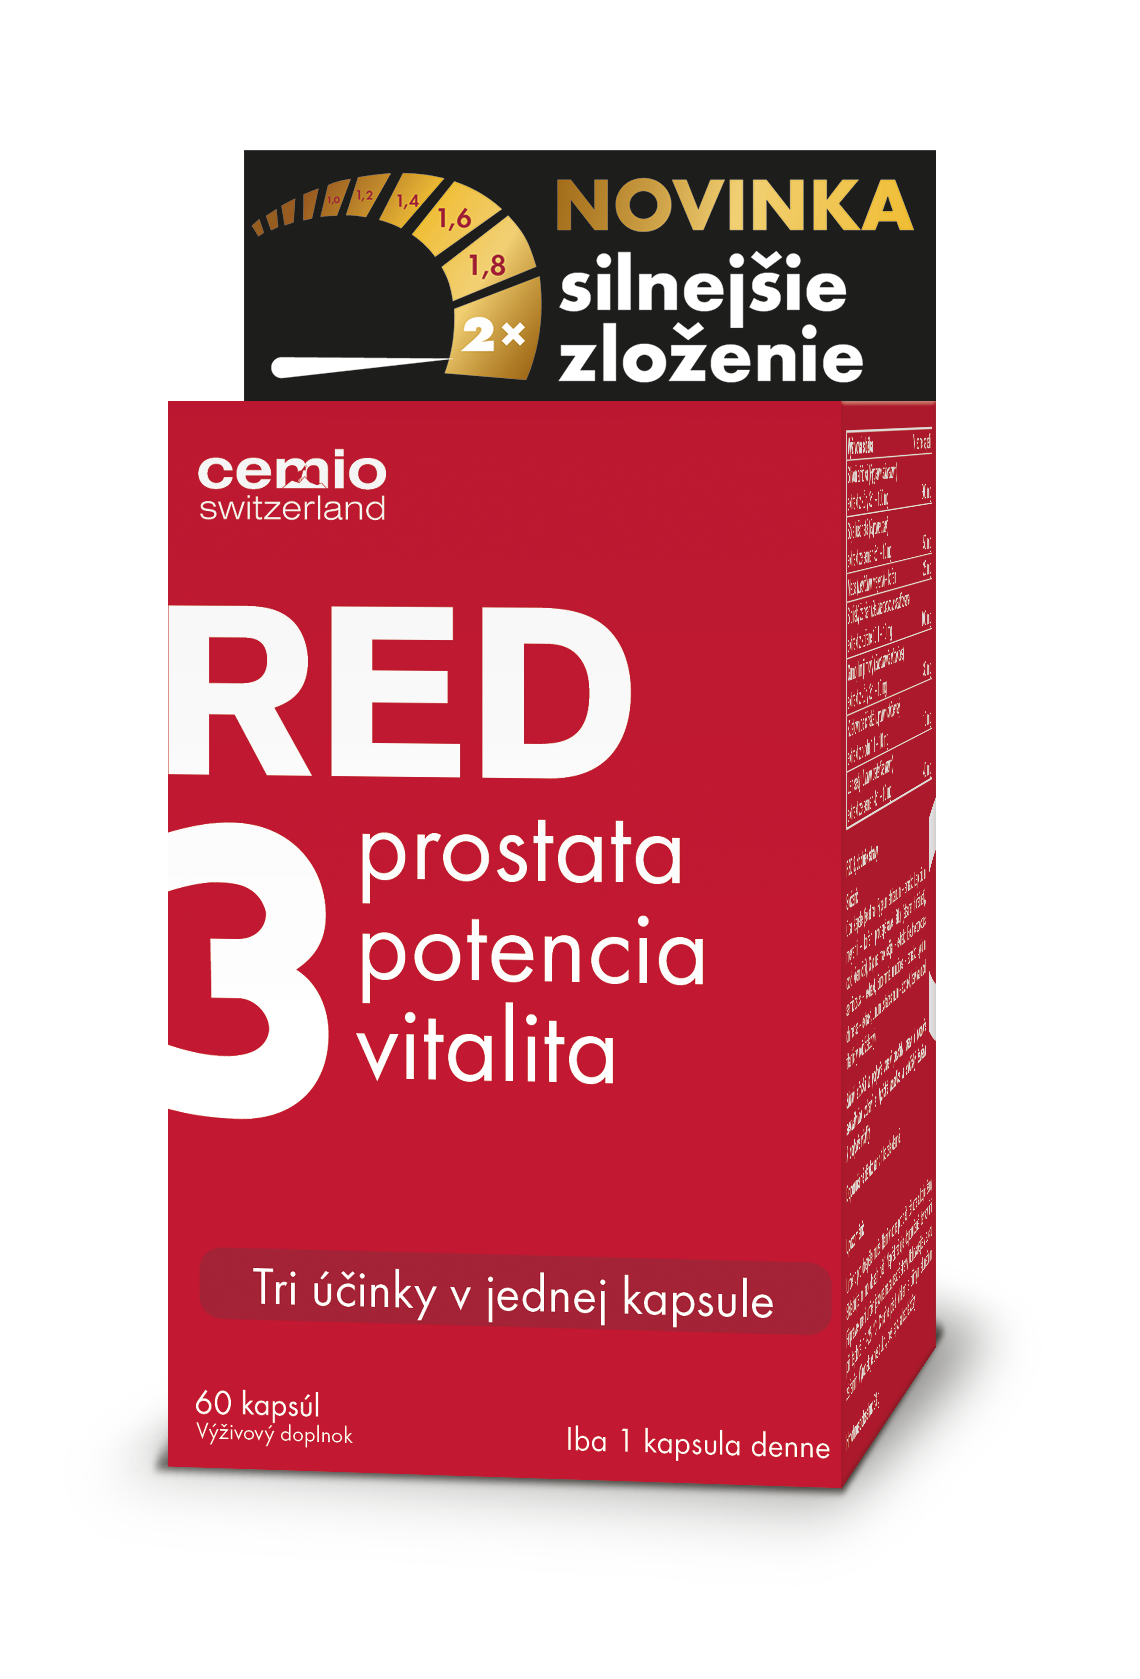 Aké sú výhody produktu Cemio RED3®?